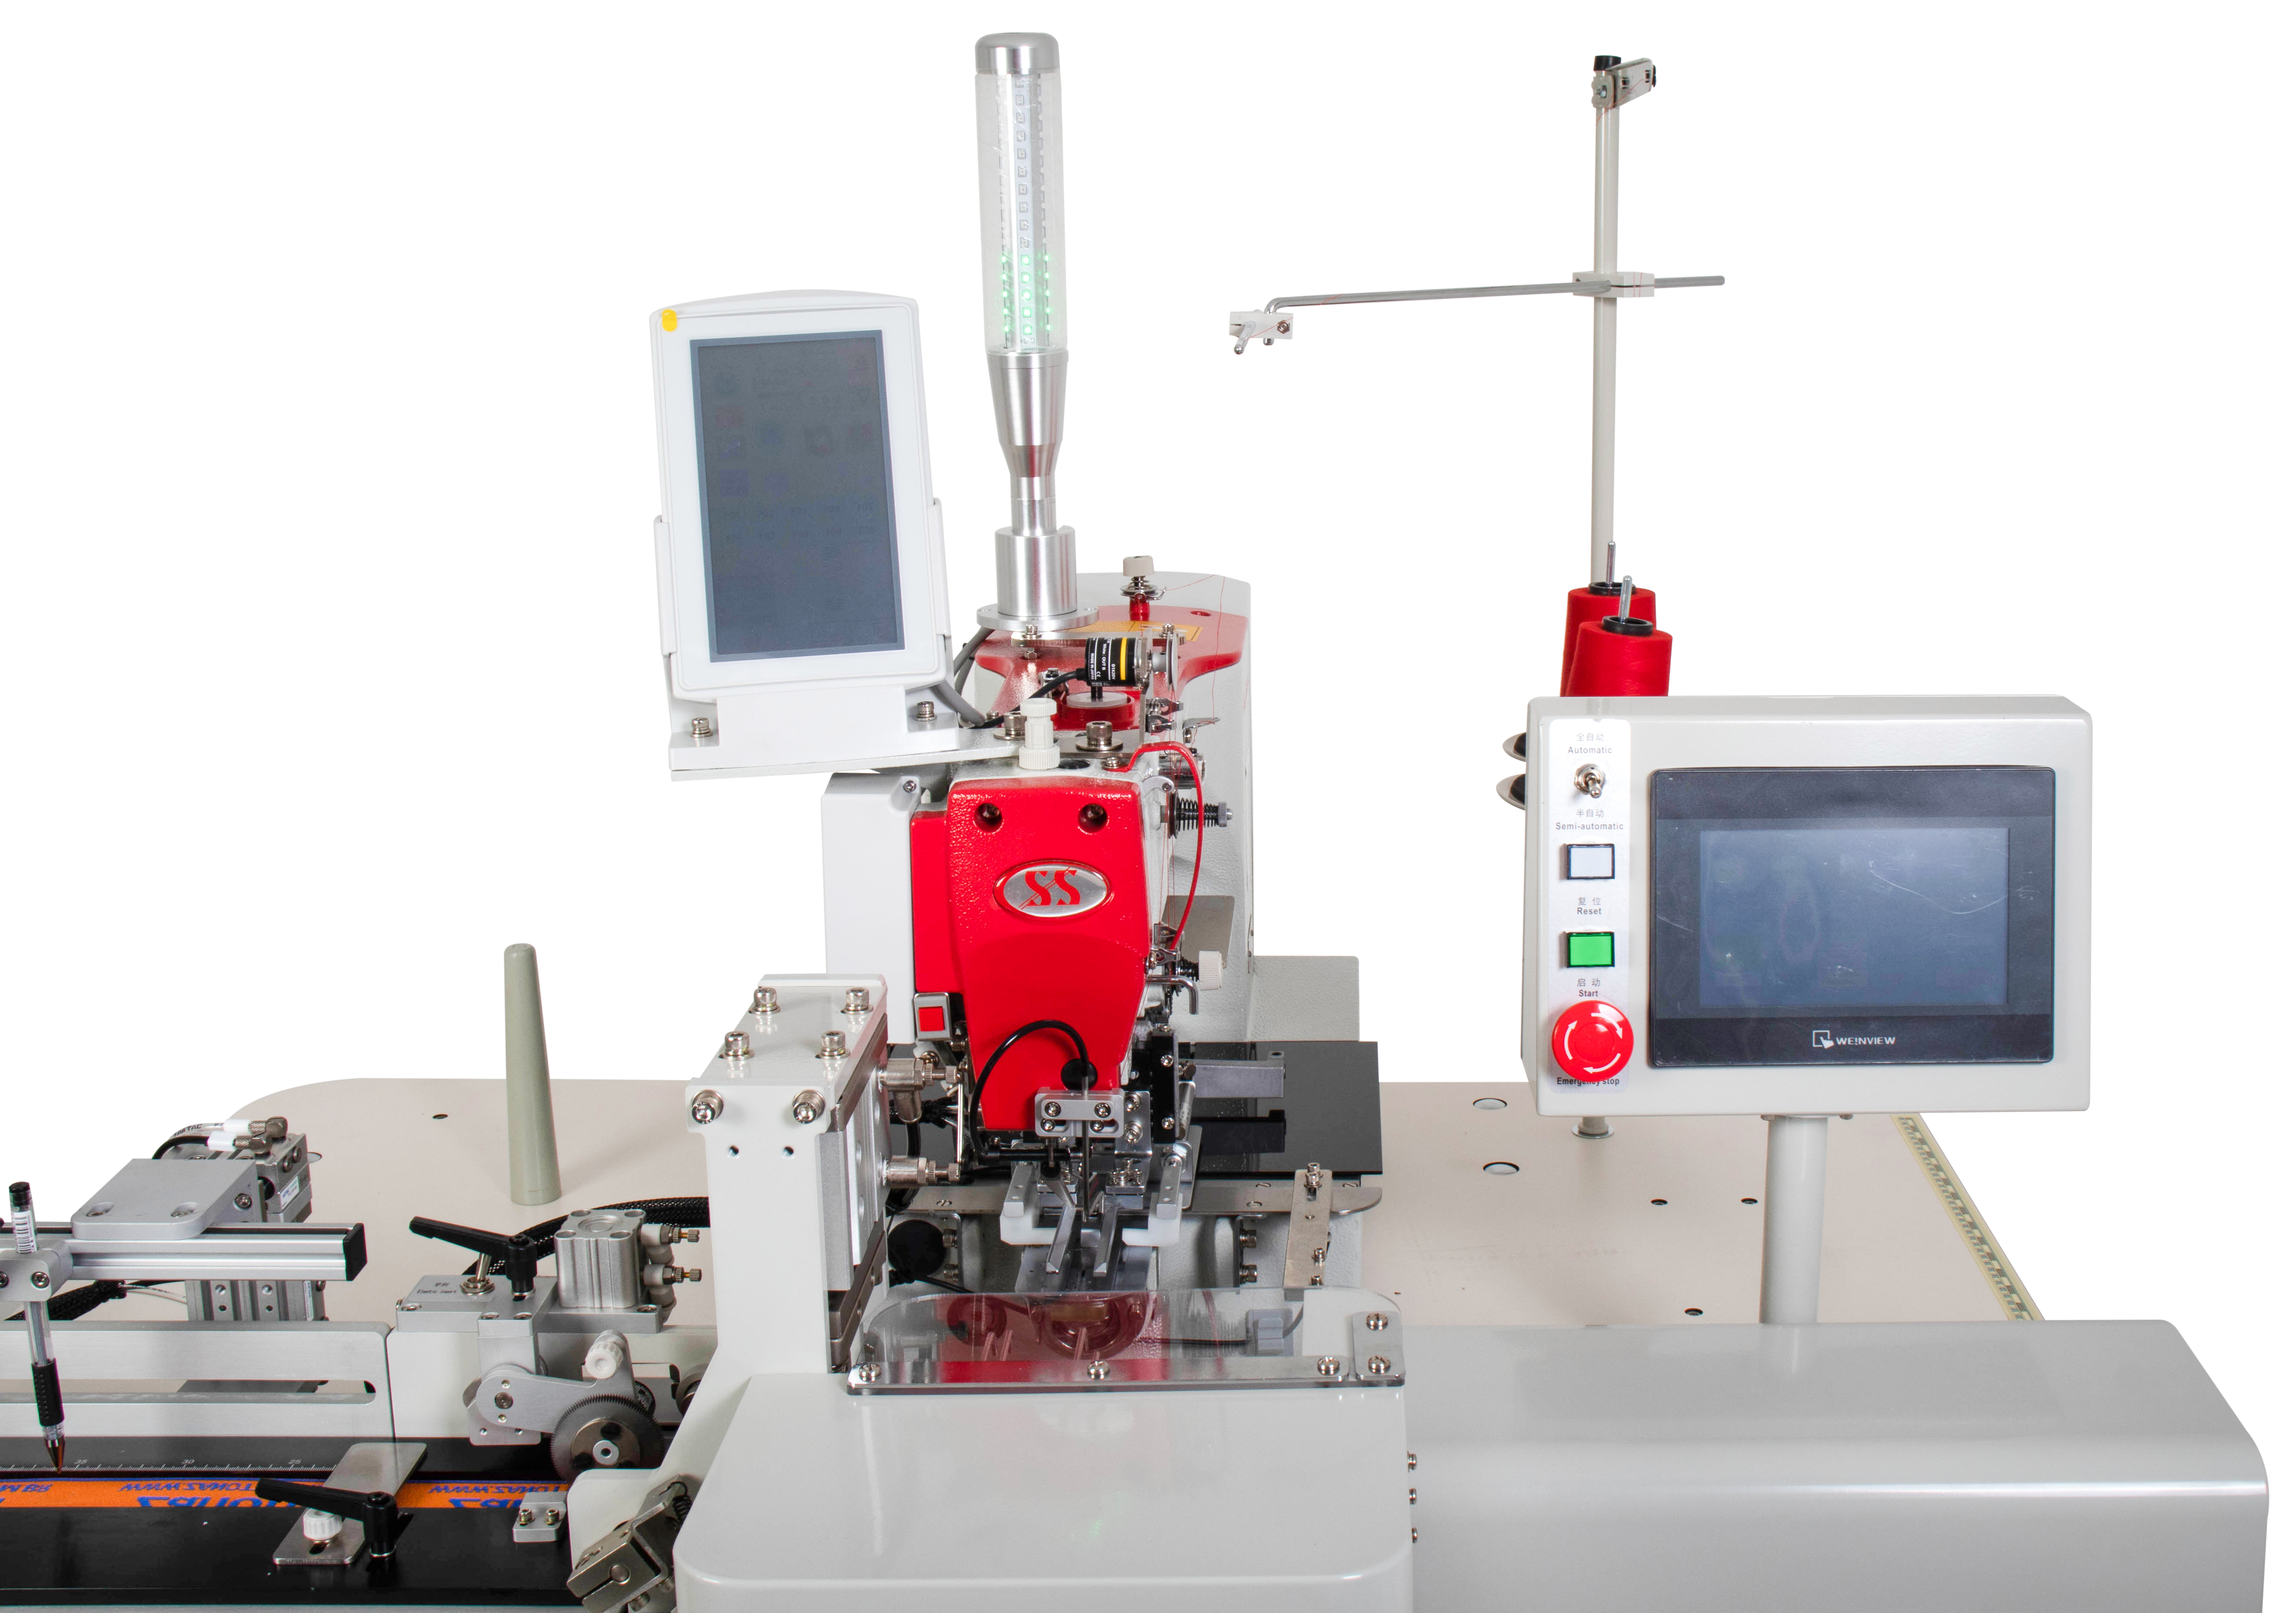 Máquina Costura Industrial Filigrana Pneumática Automática SS1613A 220v - Sun Special